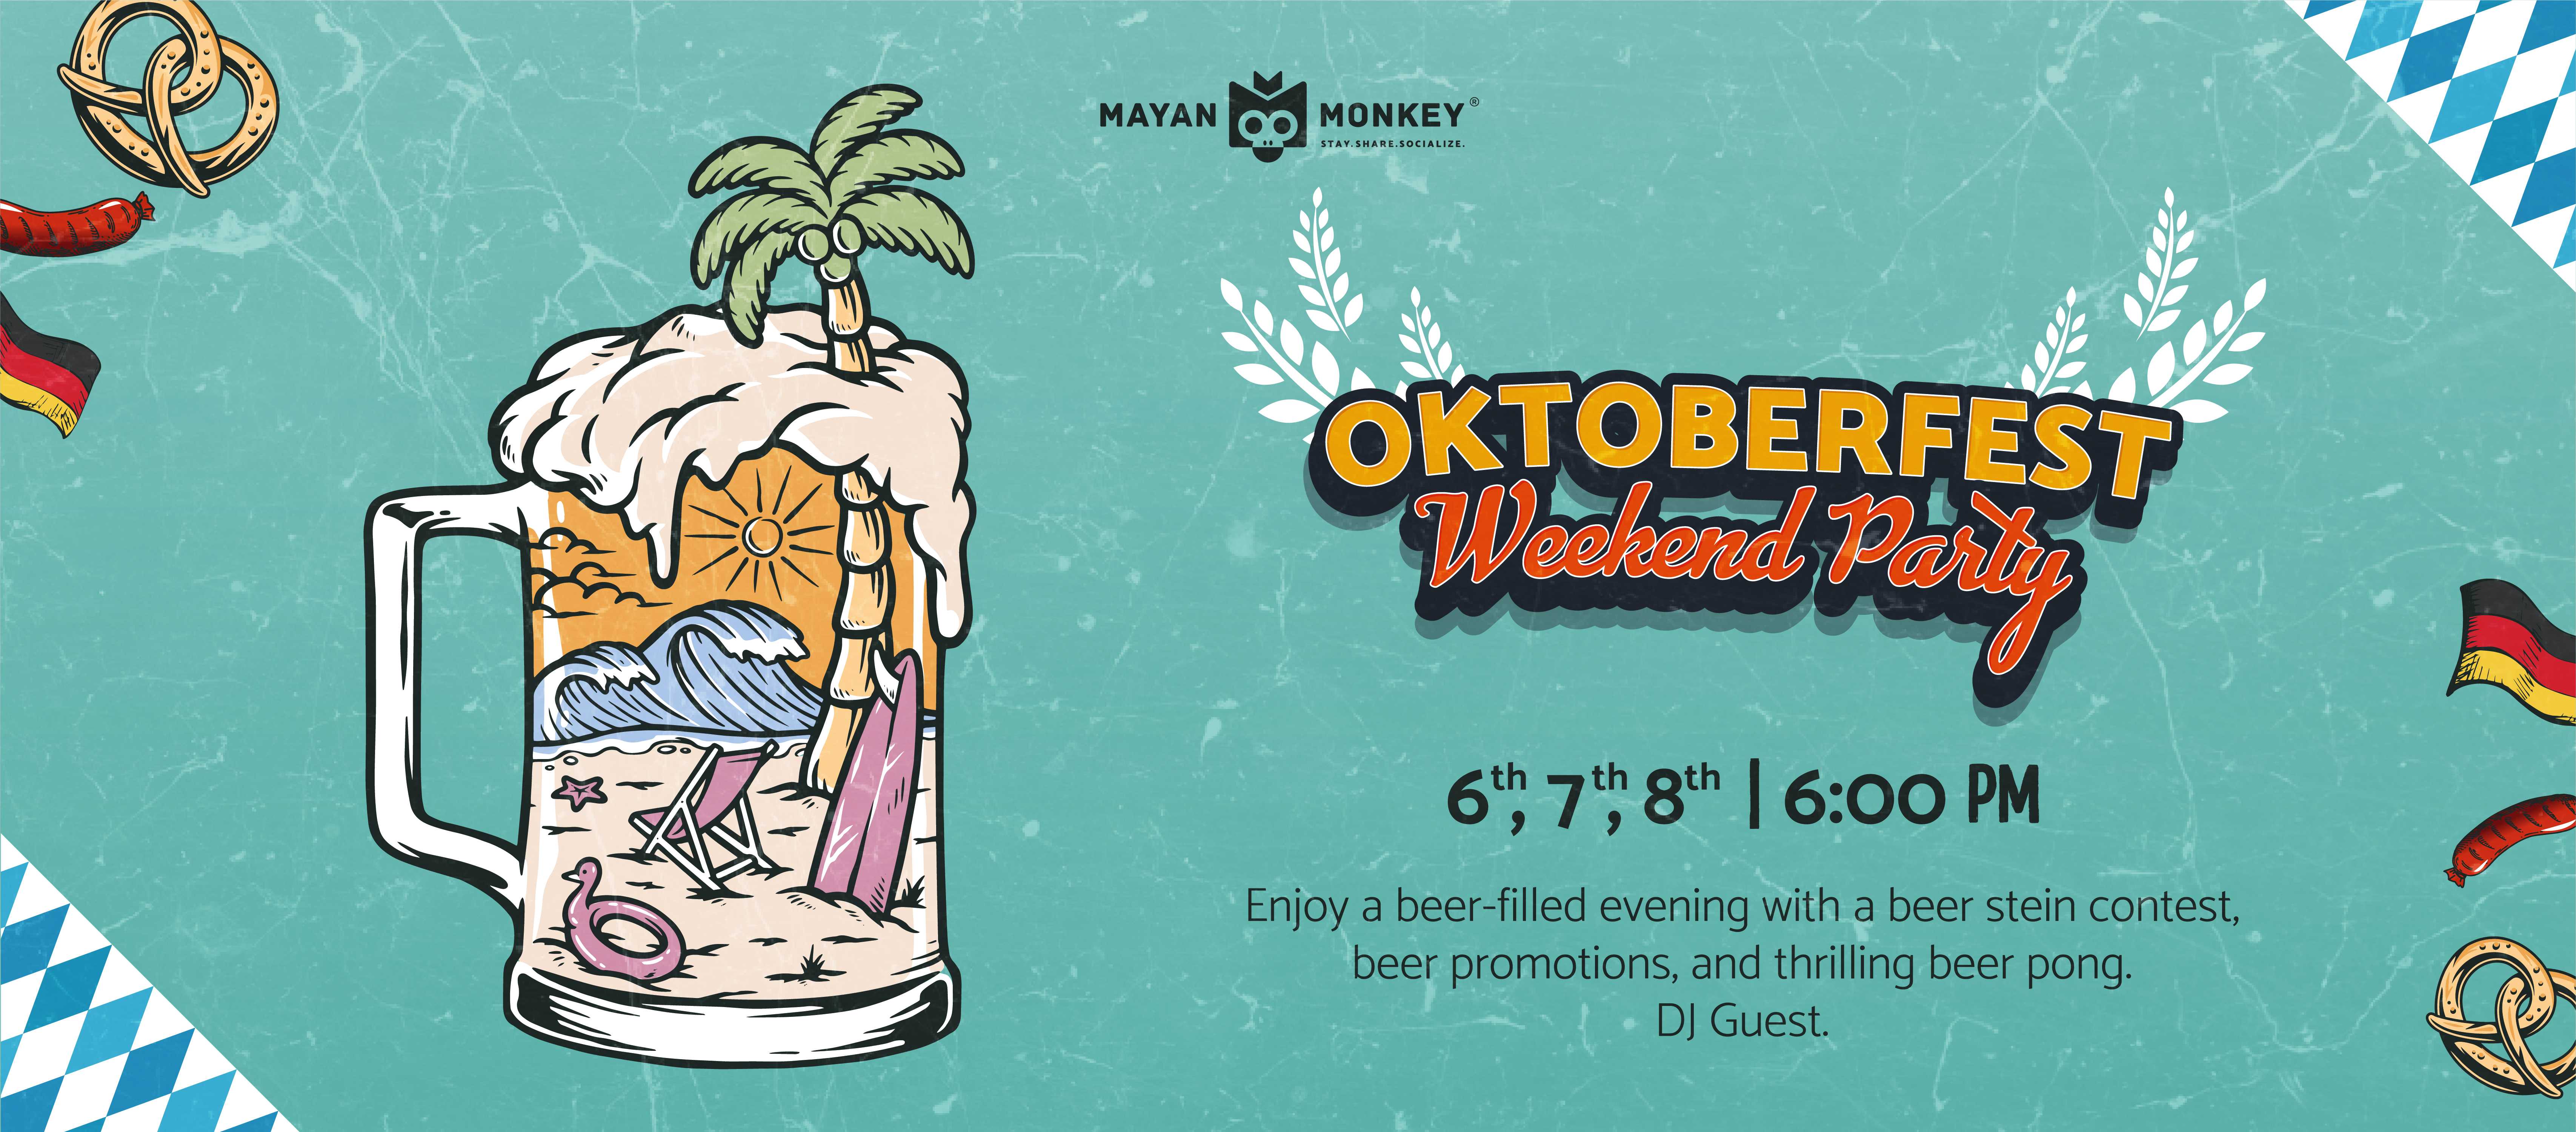 Oktoberfest Weekend Party at Mayan Monkey